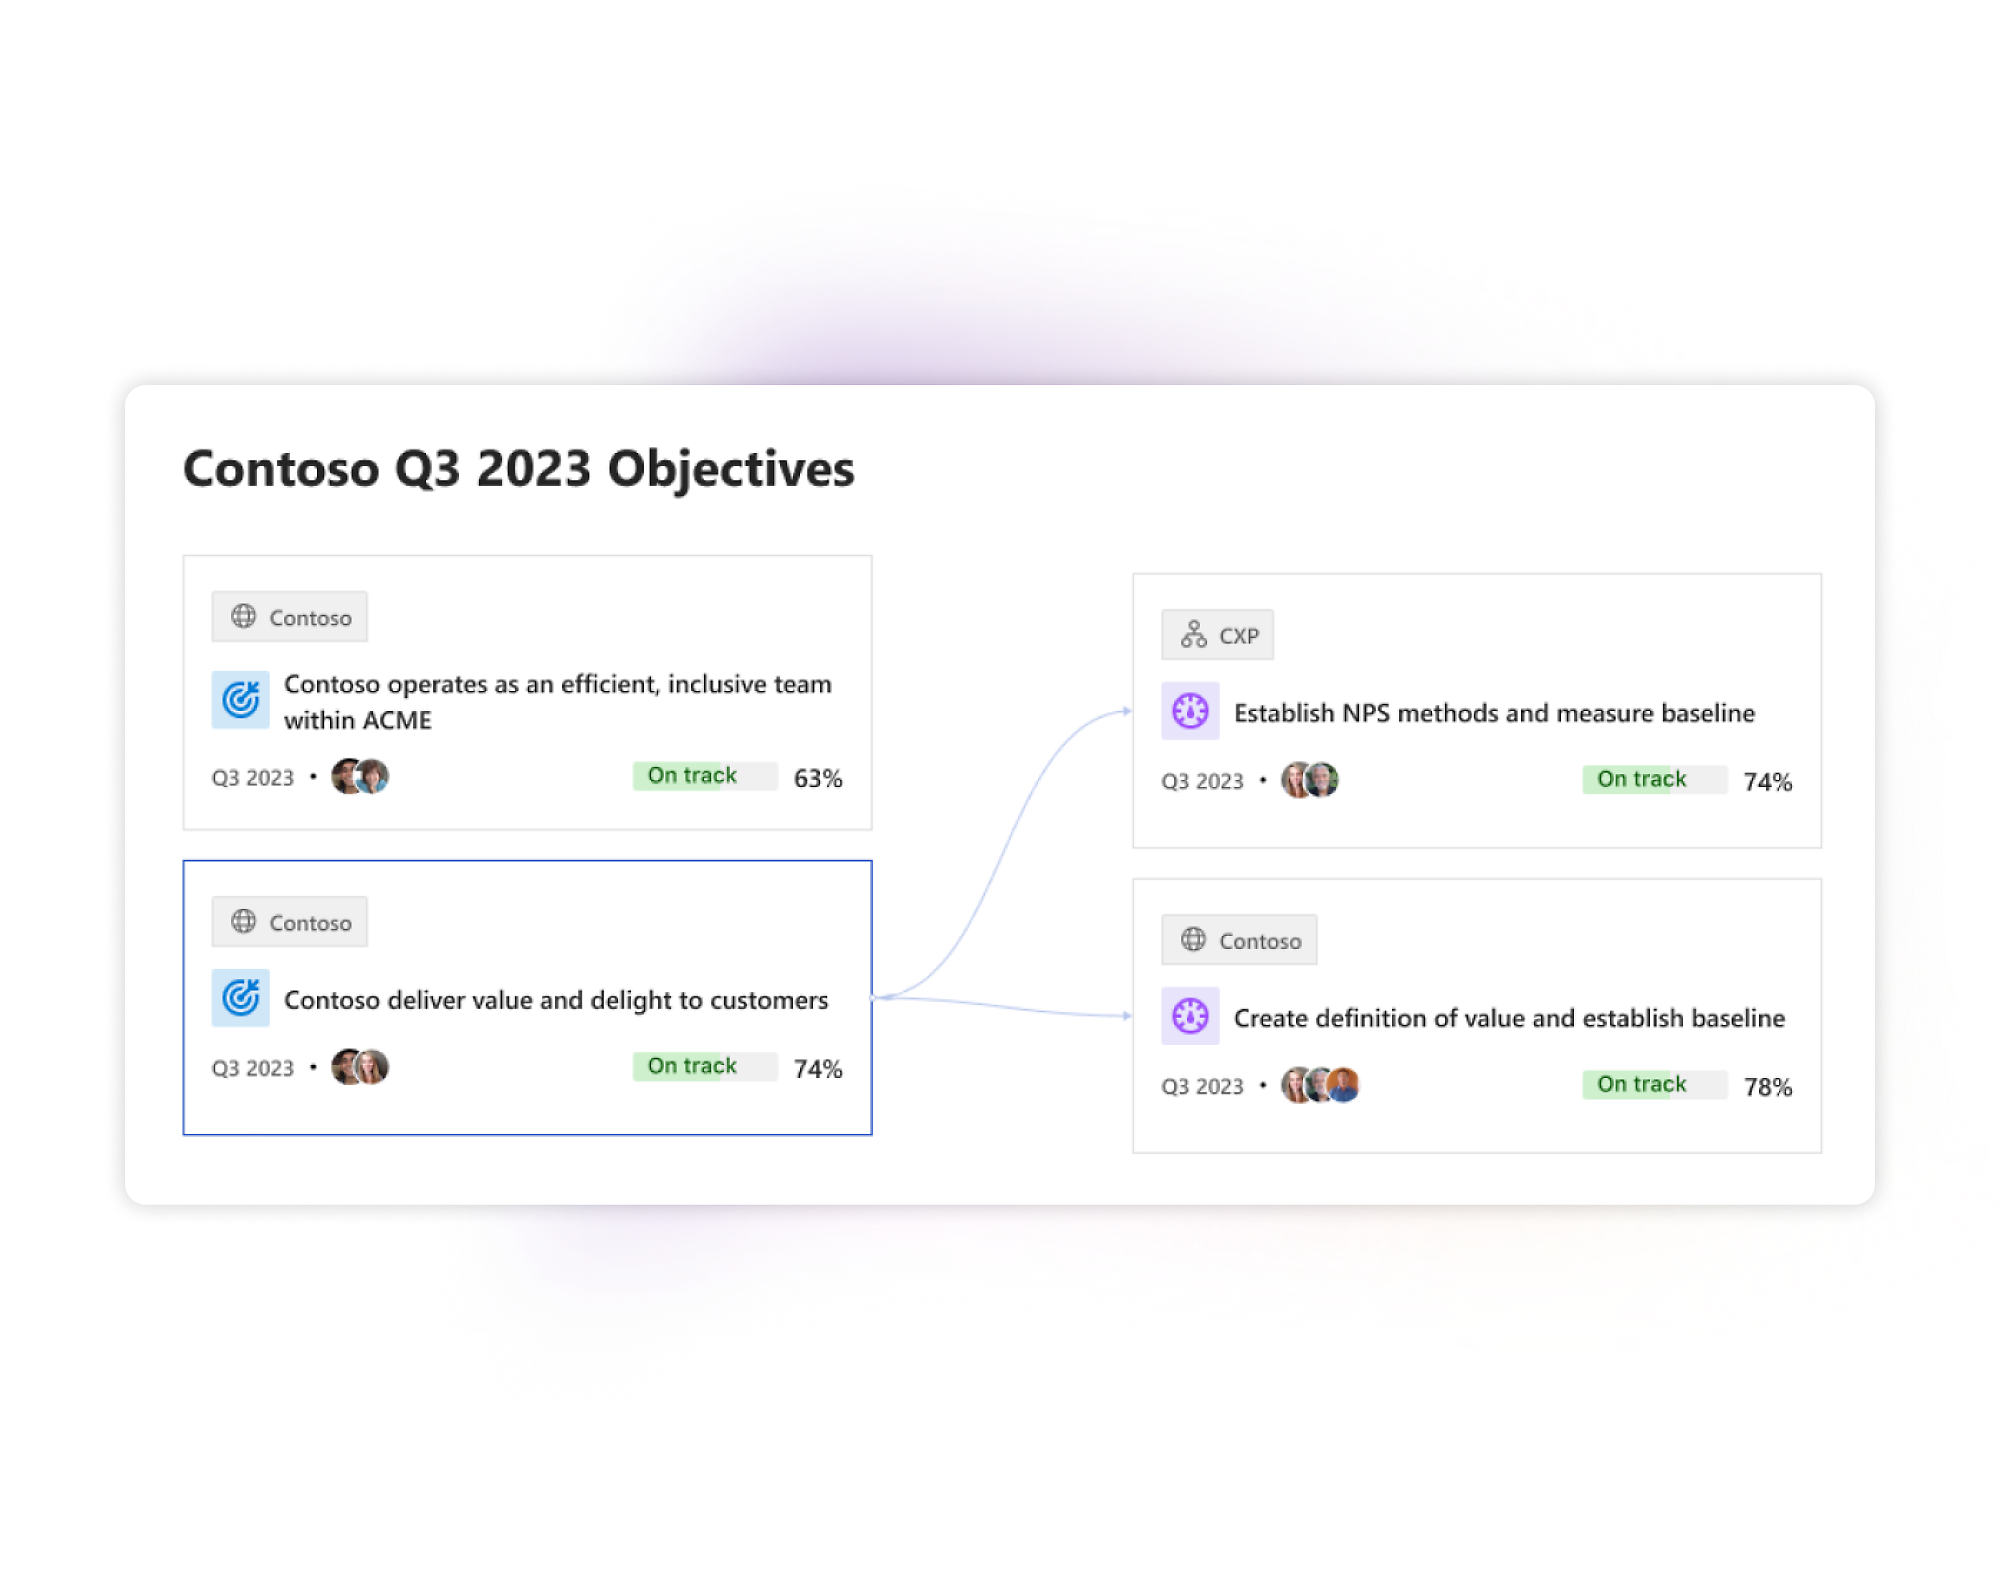 لقطة شاشة توضح لوحة معلومات أهداف شركة contoso للربع الثالث من عام 2023 مع تتبع التقدم ومؤشرات الحالة 